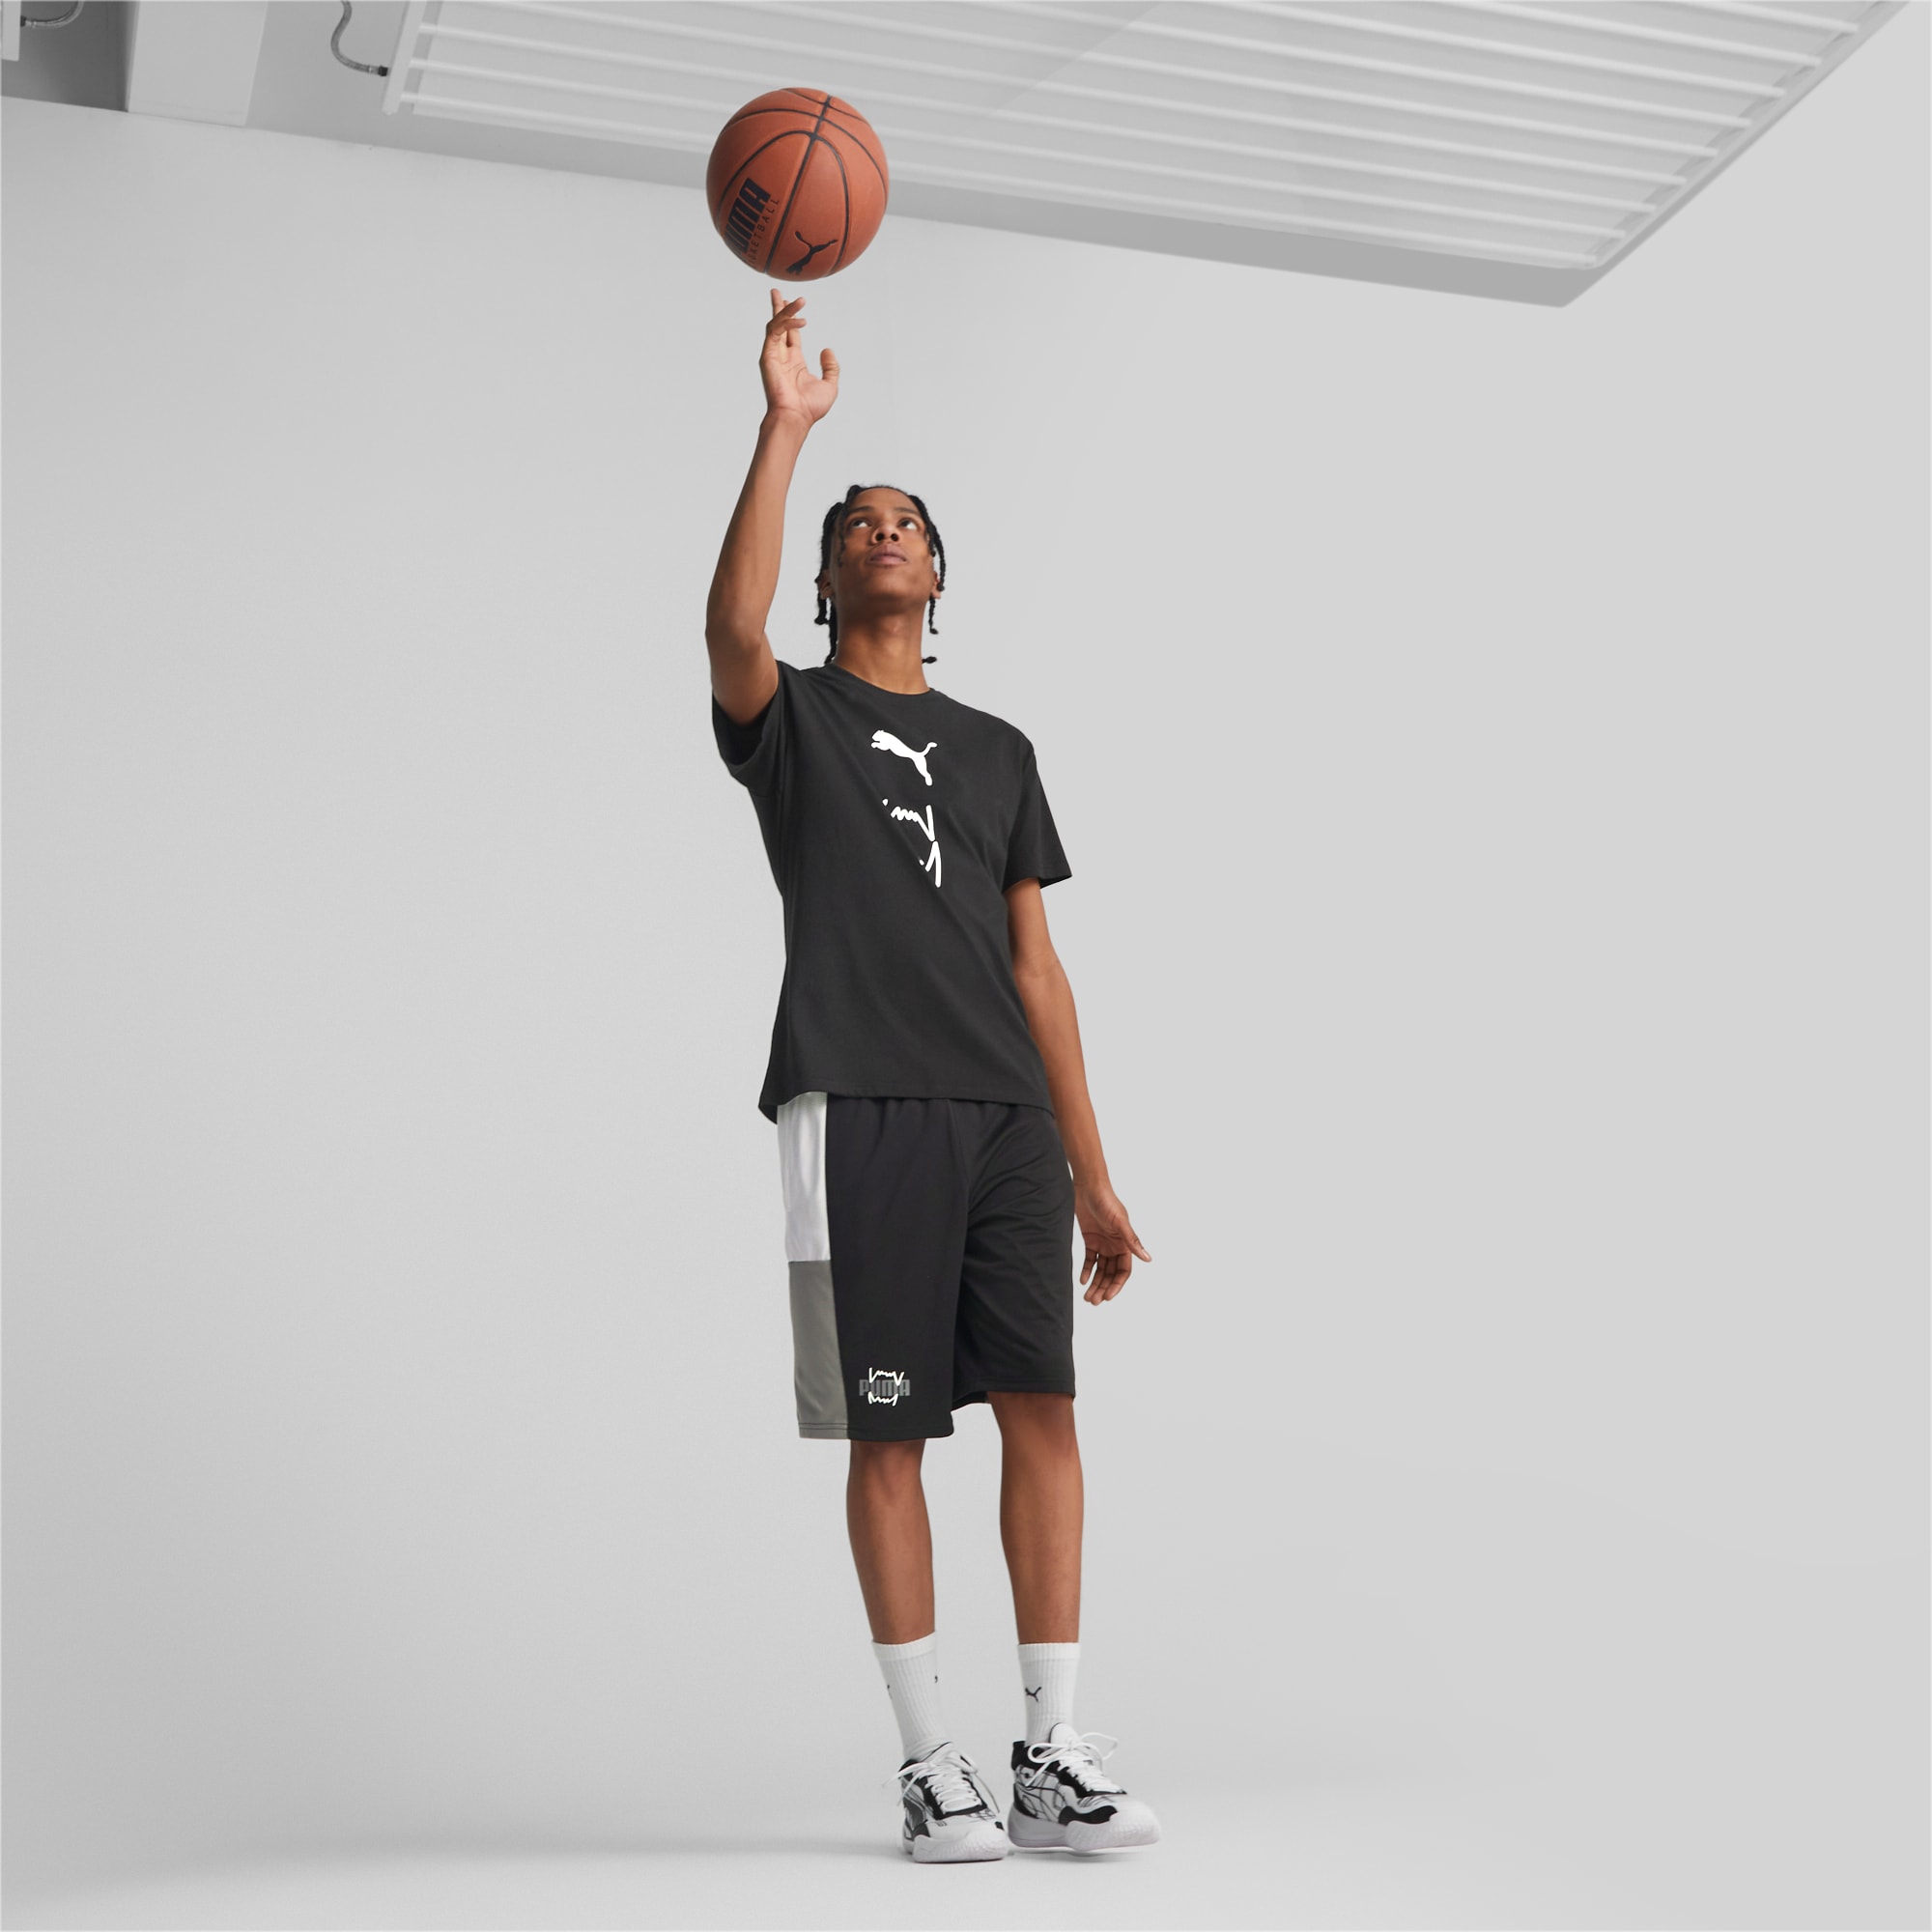 Calções Puma Give N Go Black-White - Basketball Emotion